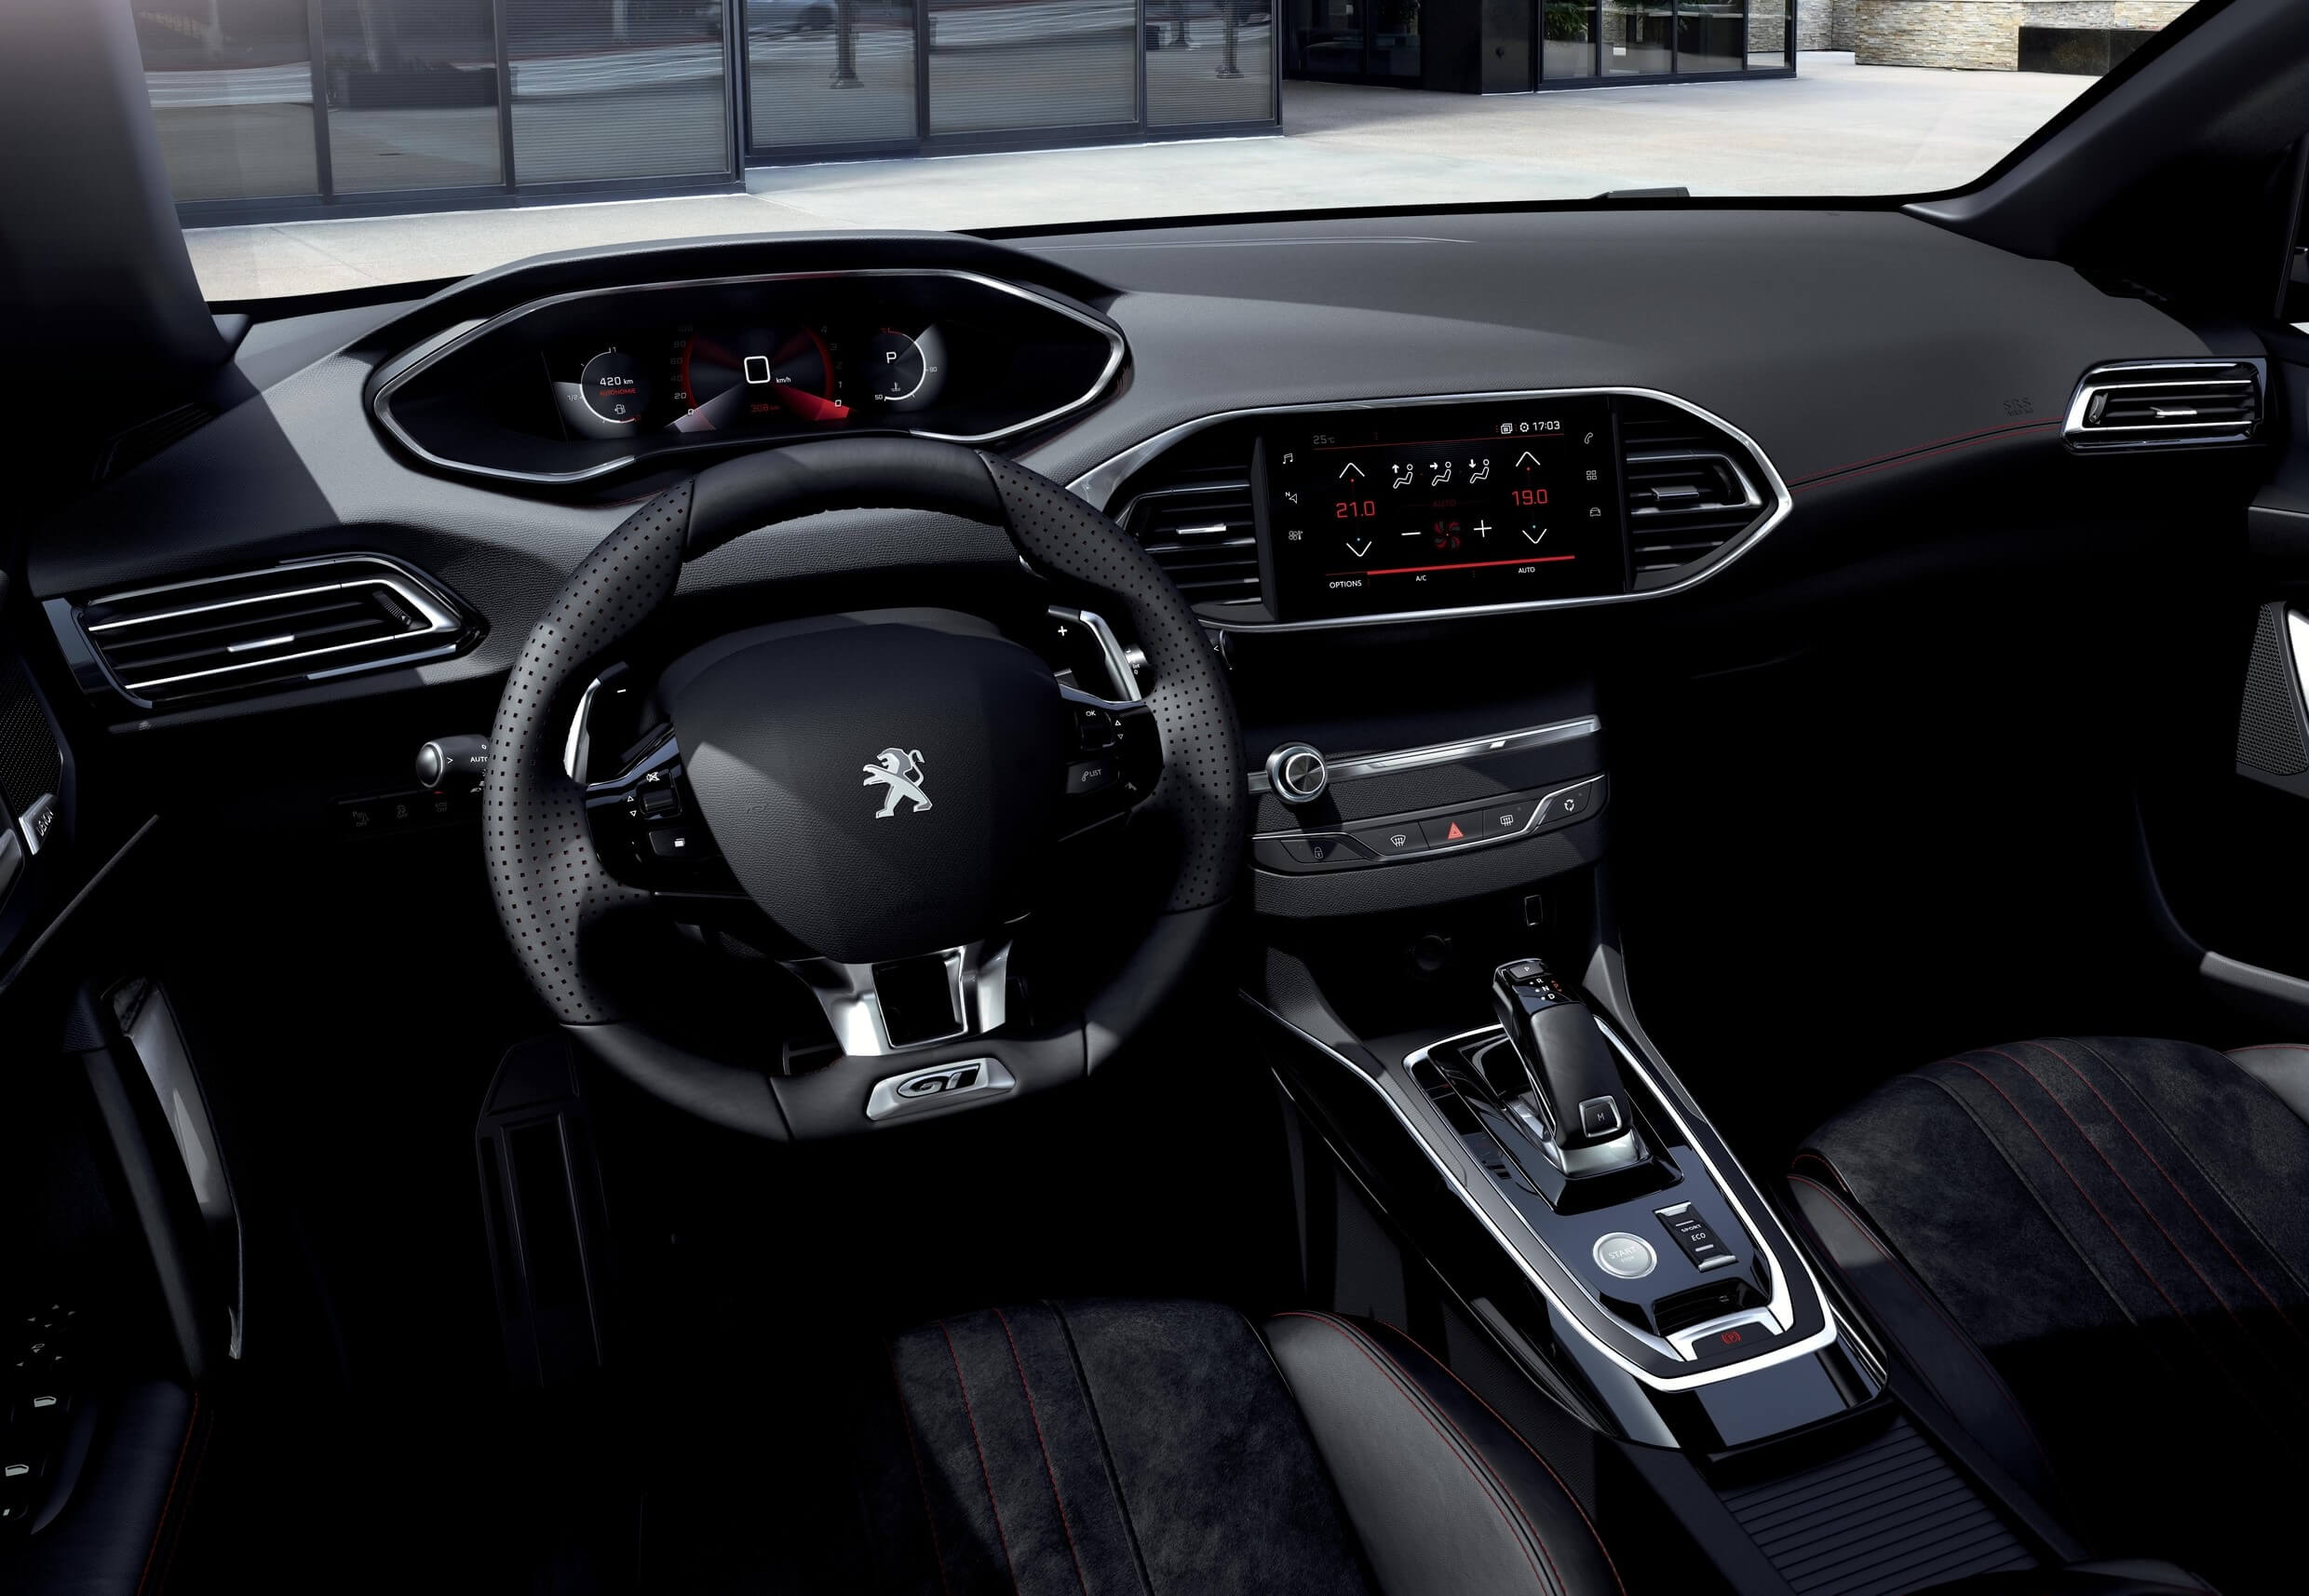 Peugeot 308 2020: interior.